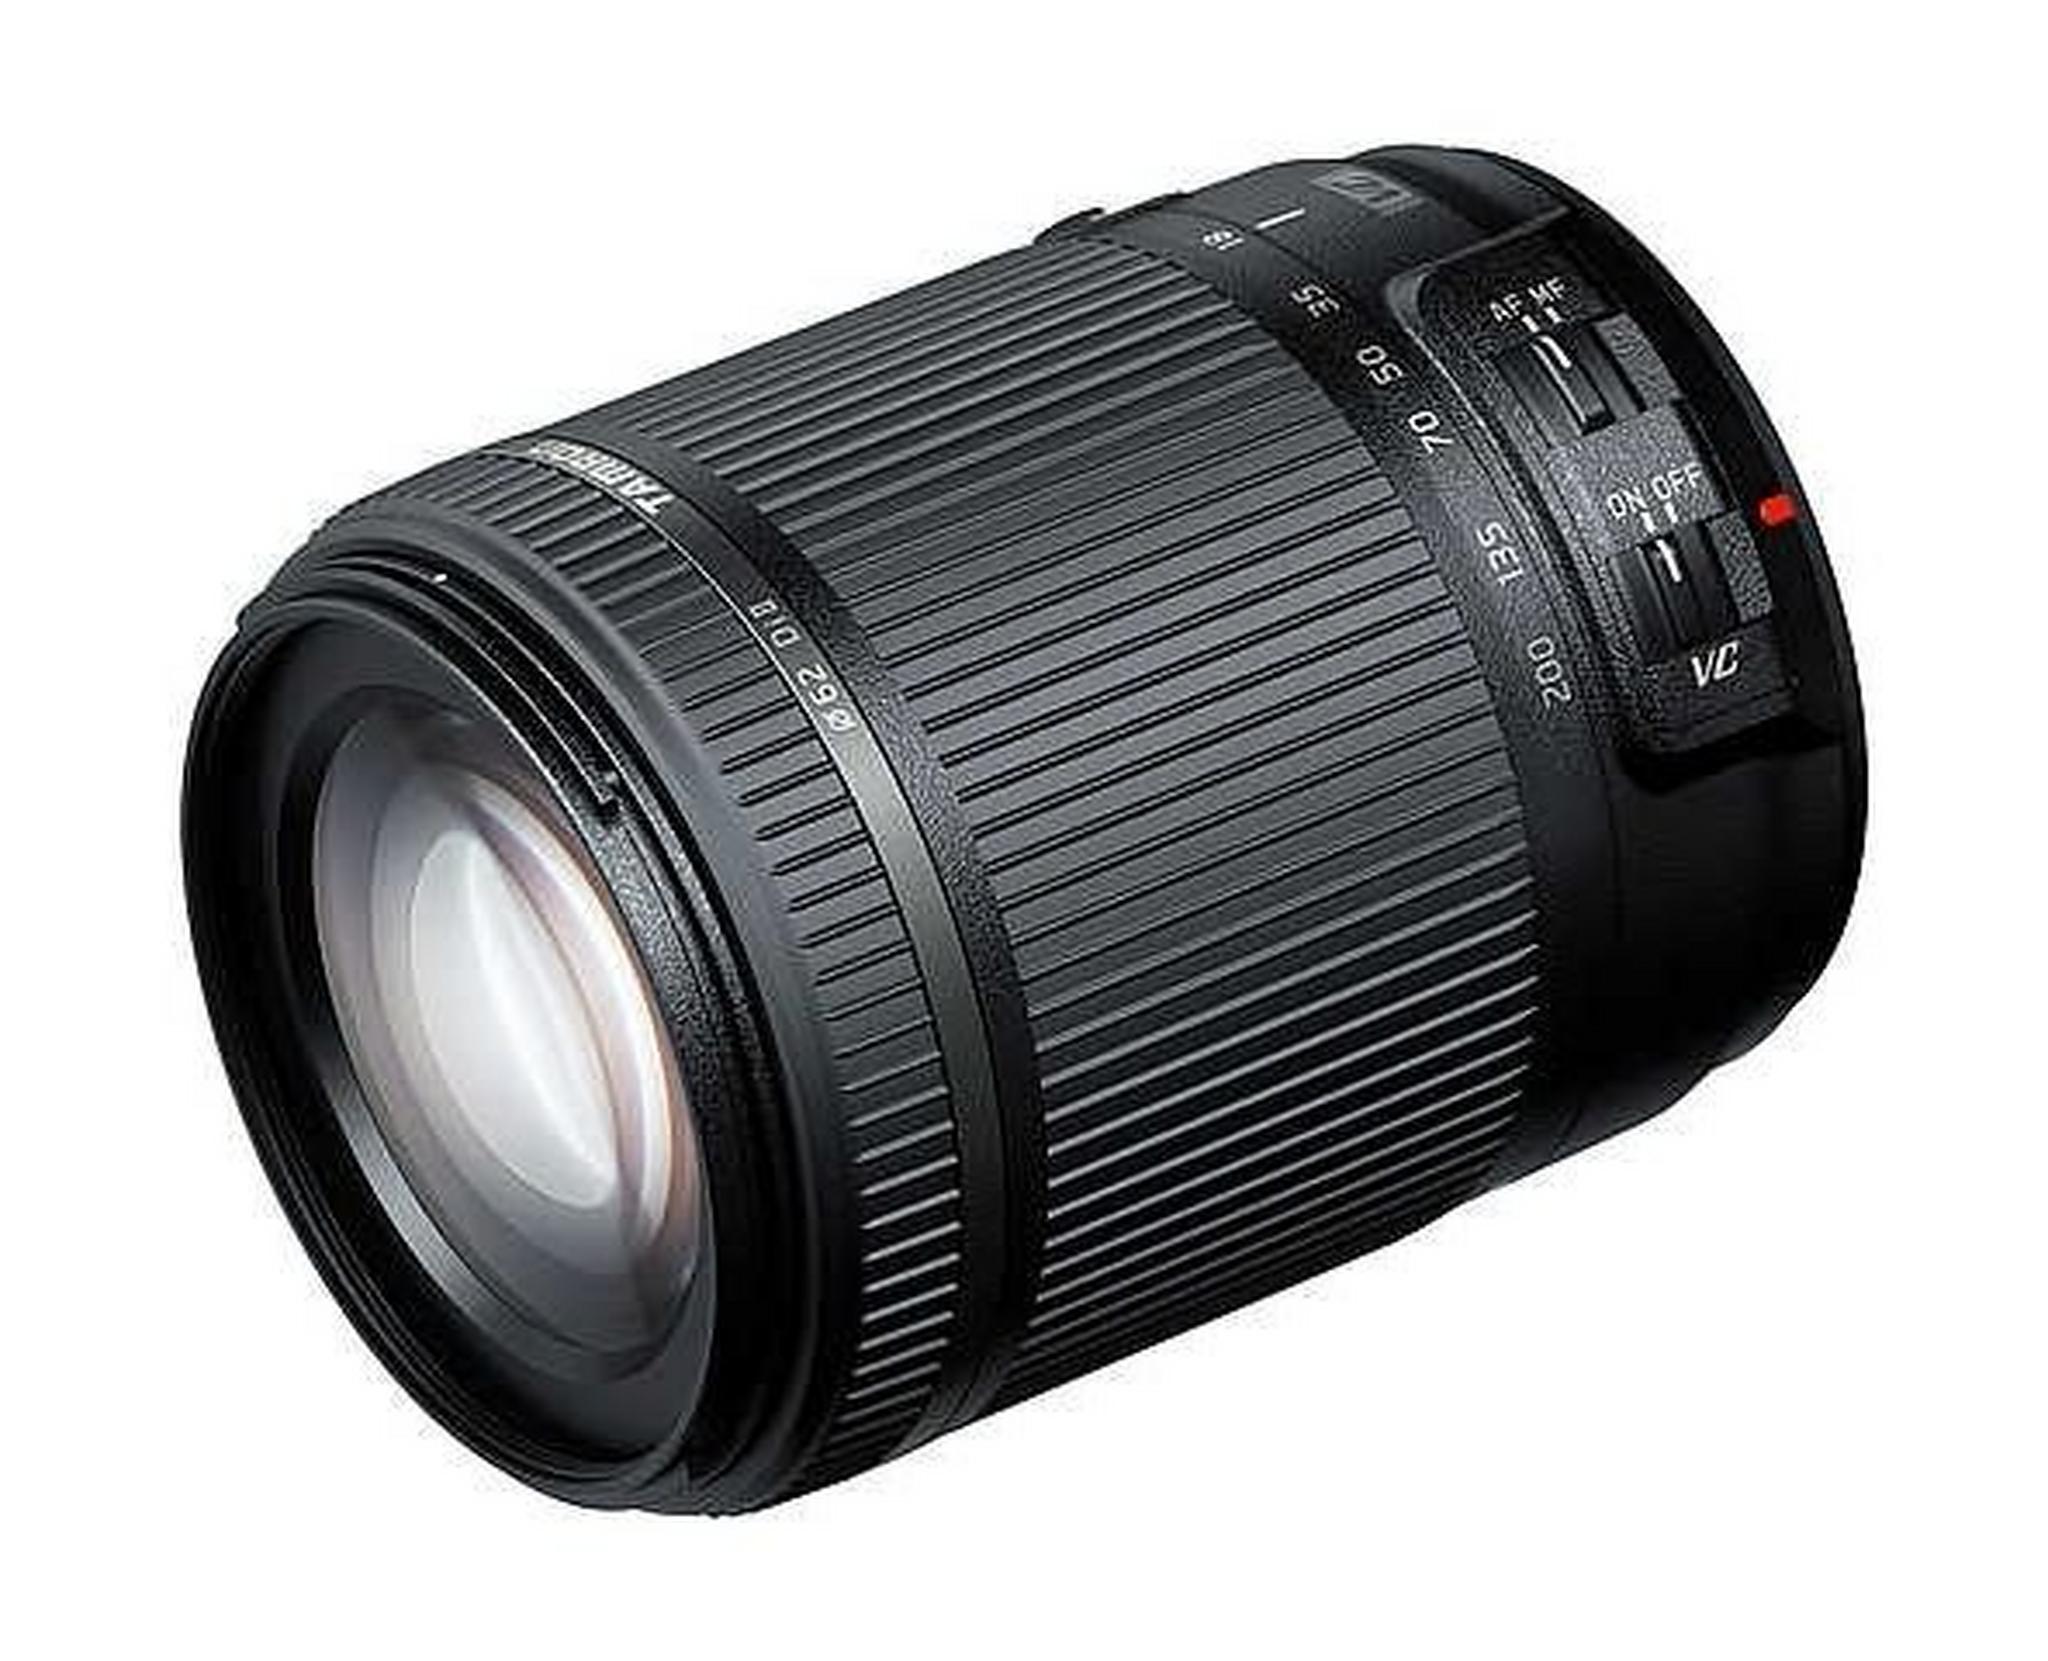 Tamron 18-200mm f/3.5-6.3 Di II VC Lens for Nikon DSLR Camera